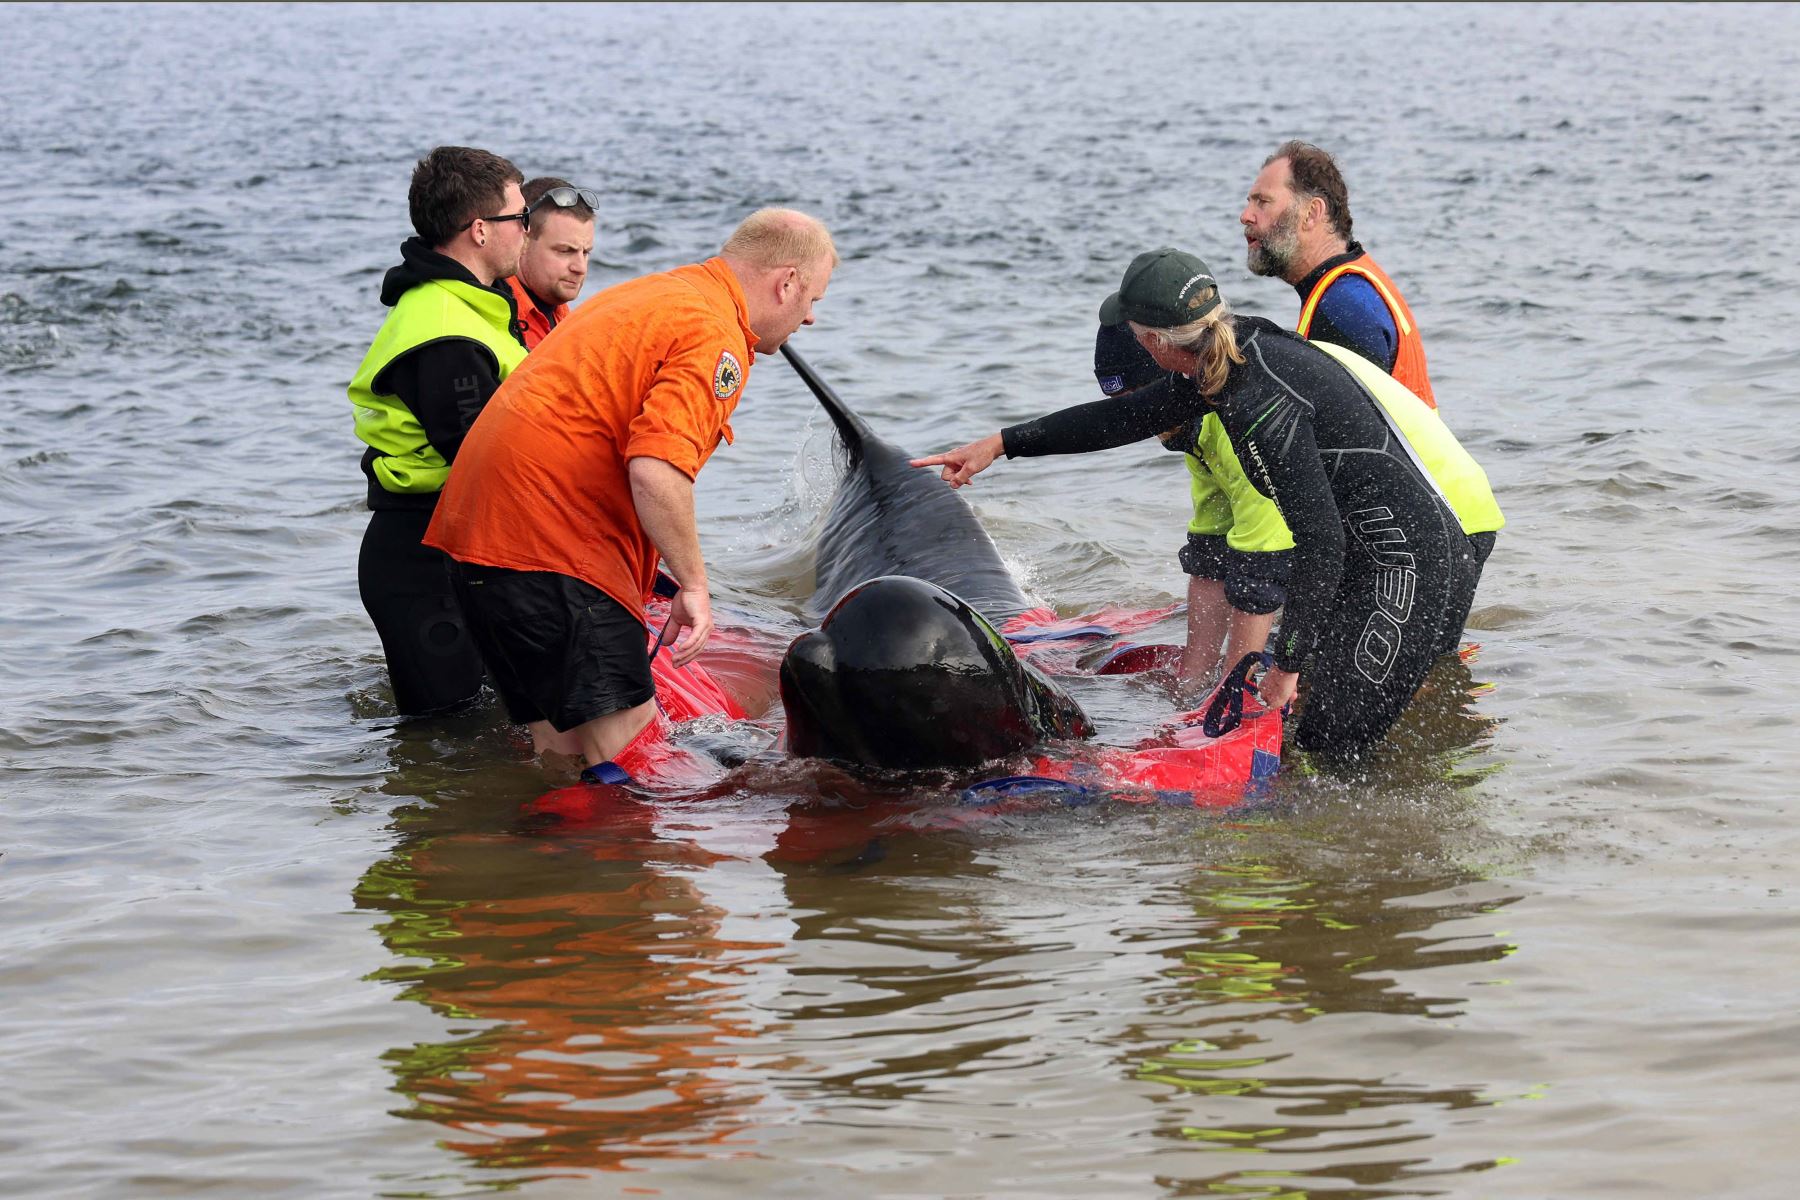 Alrededor de 200 ballenas piloto murieron en una playa de la bahía de Macquarie, en el oeste de la isla australiana de Tasmania, y 35 fueron rescatadas con vida después del varamiento masivo ocurrido la víspera en este remoto lugar, informaron este jueves las autoridades del país oceánico. Foto: AFP